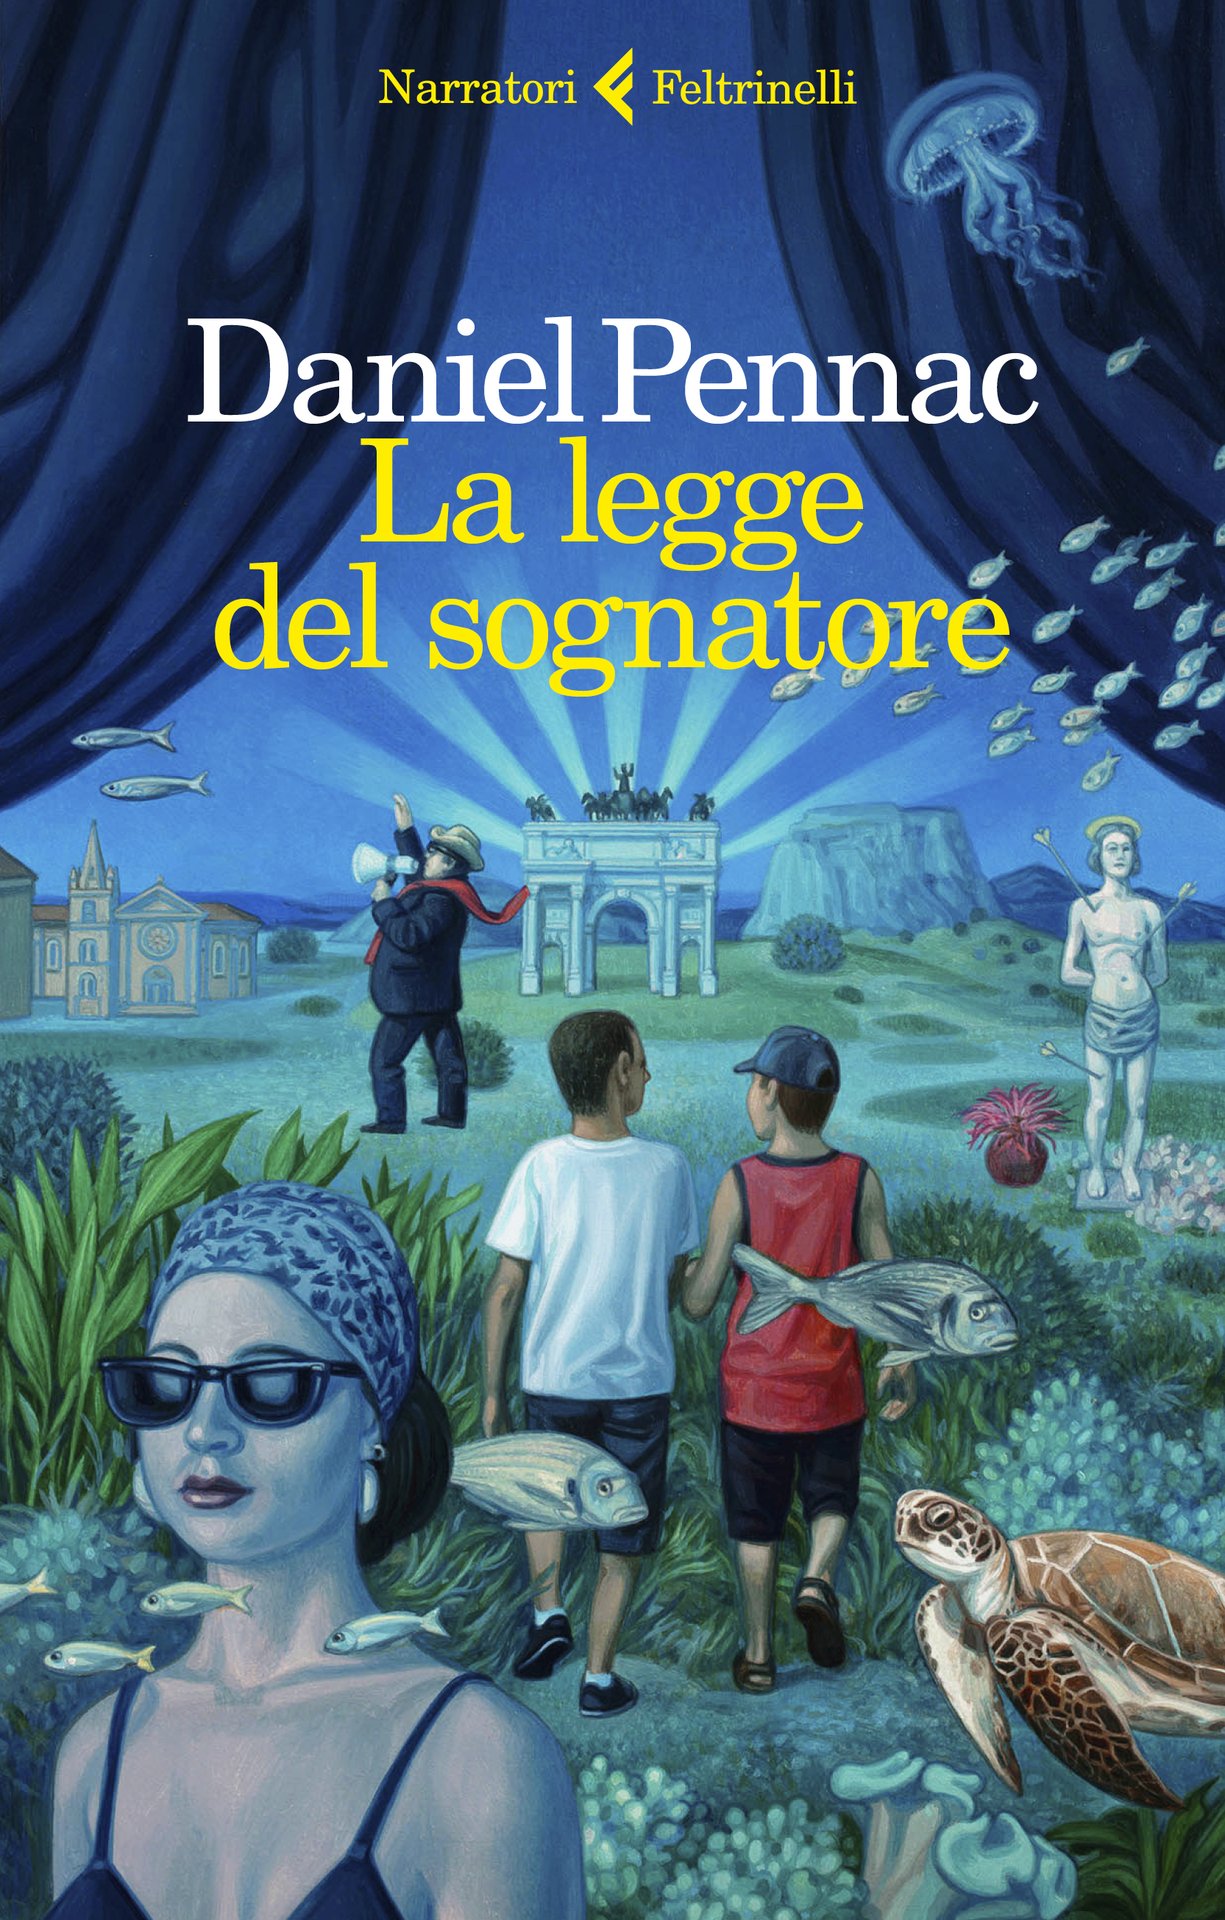 "La legge del sognatore". Daniel Pennac a Milano, Torino, Rimini e Bologna